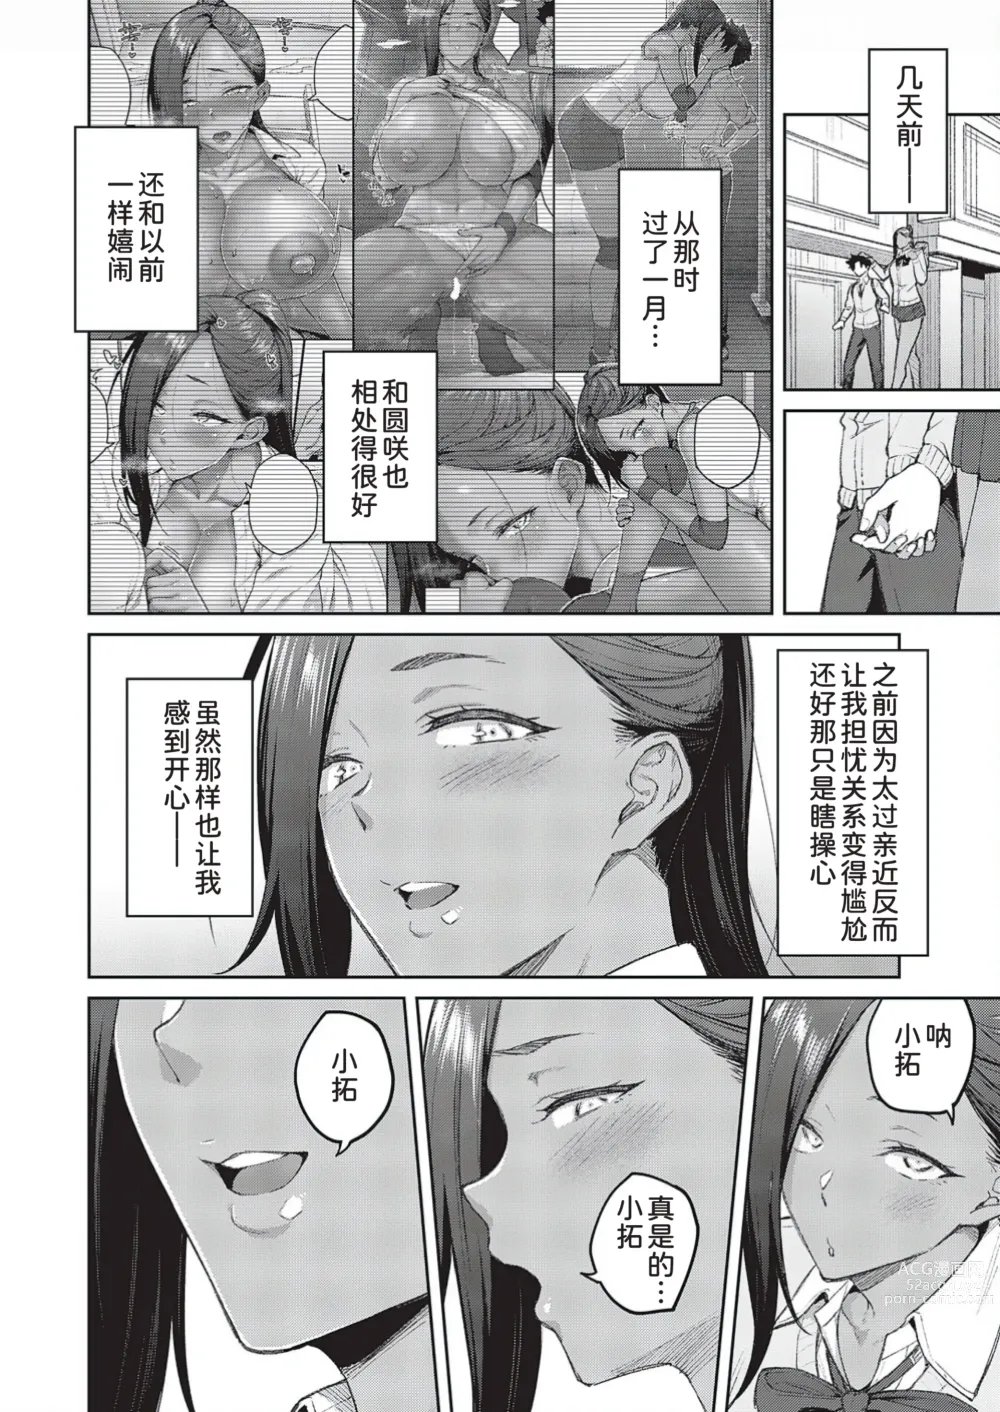 Page 5 of manga Tachiaoi 3